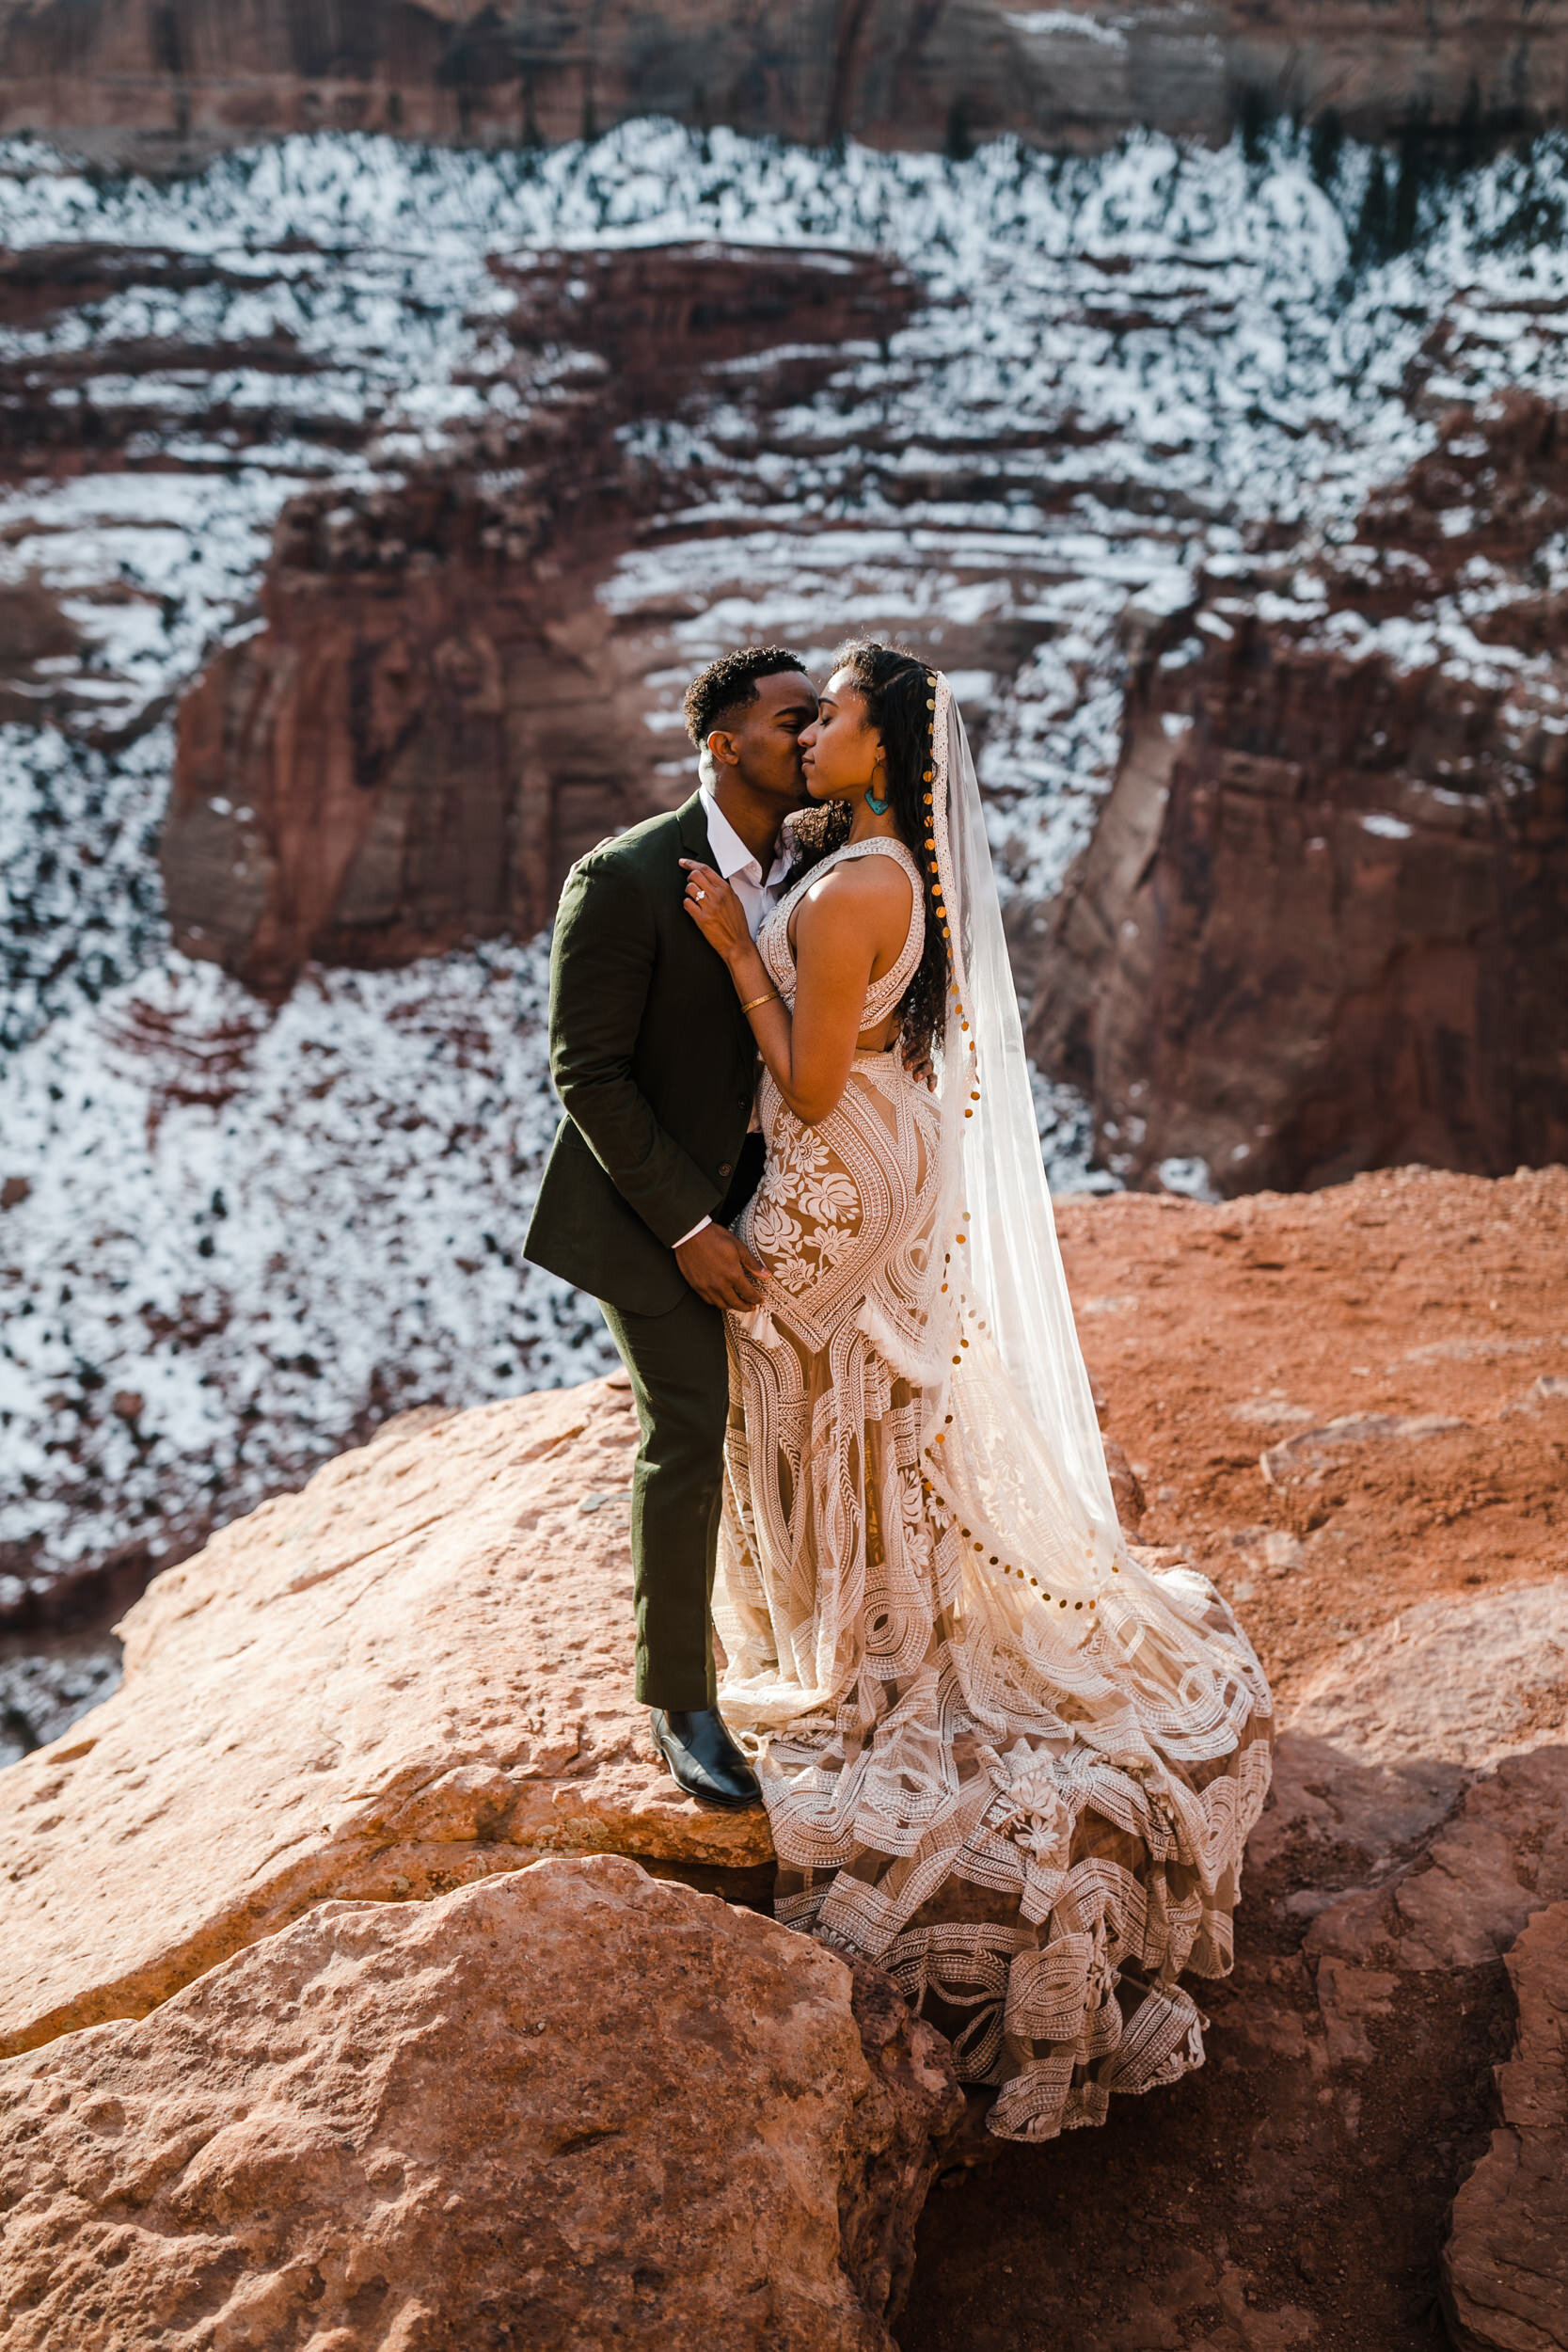 Moab Elopement Photographer | The Hearnes | Rue de Seine East Gown | Boho Western Desert Wedding Inspiration